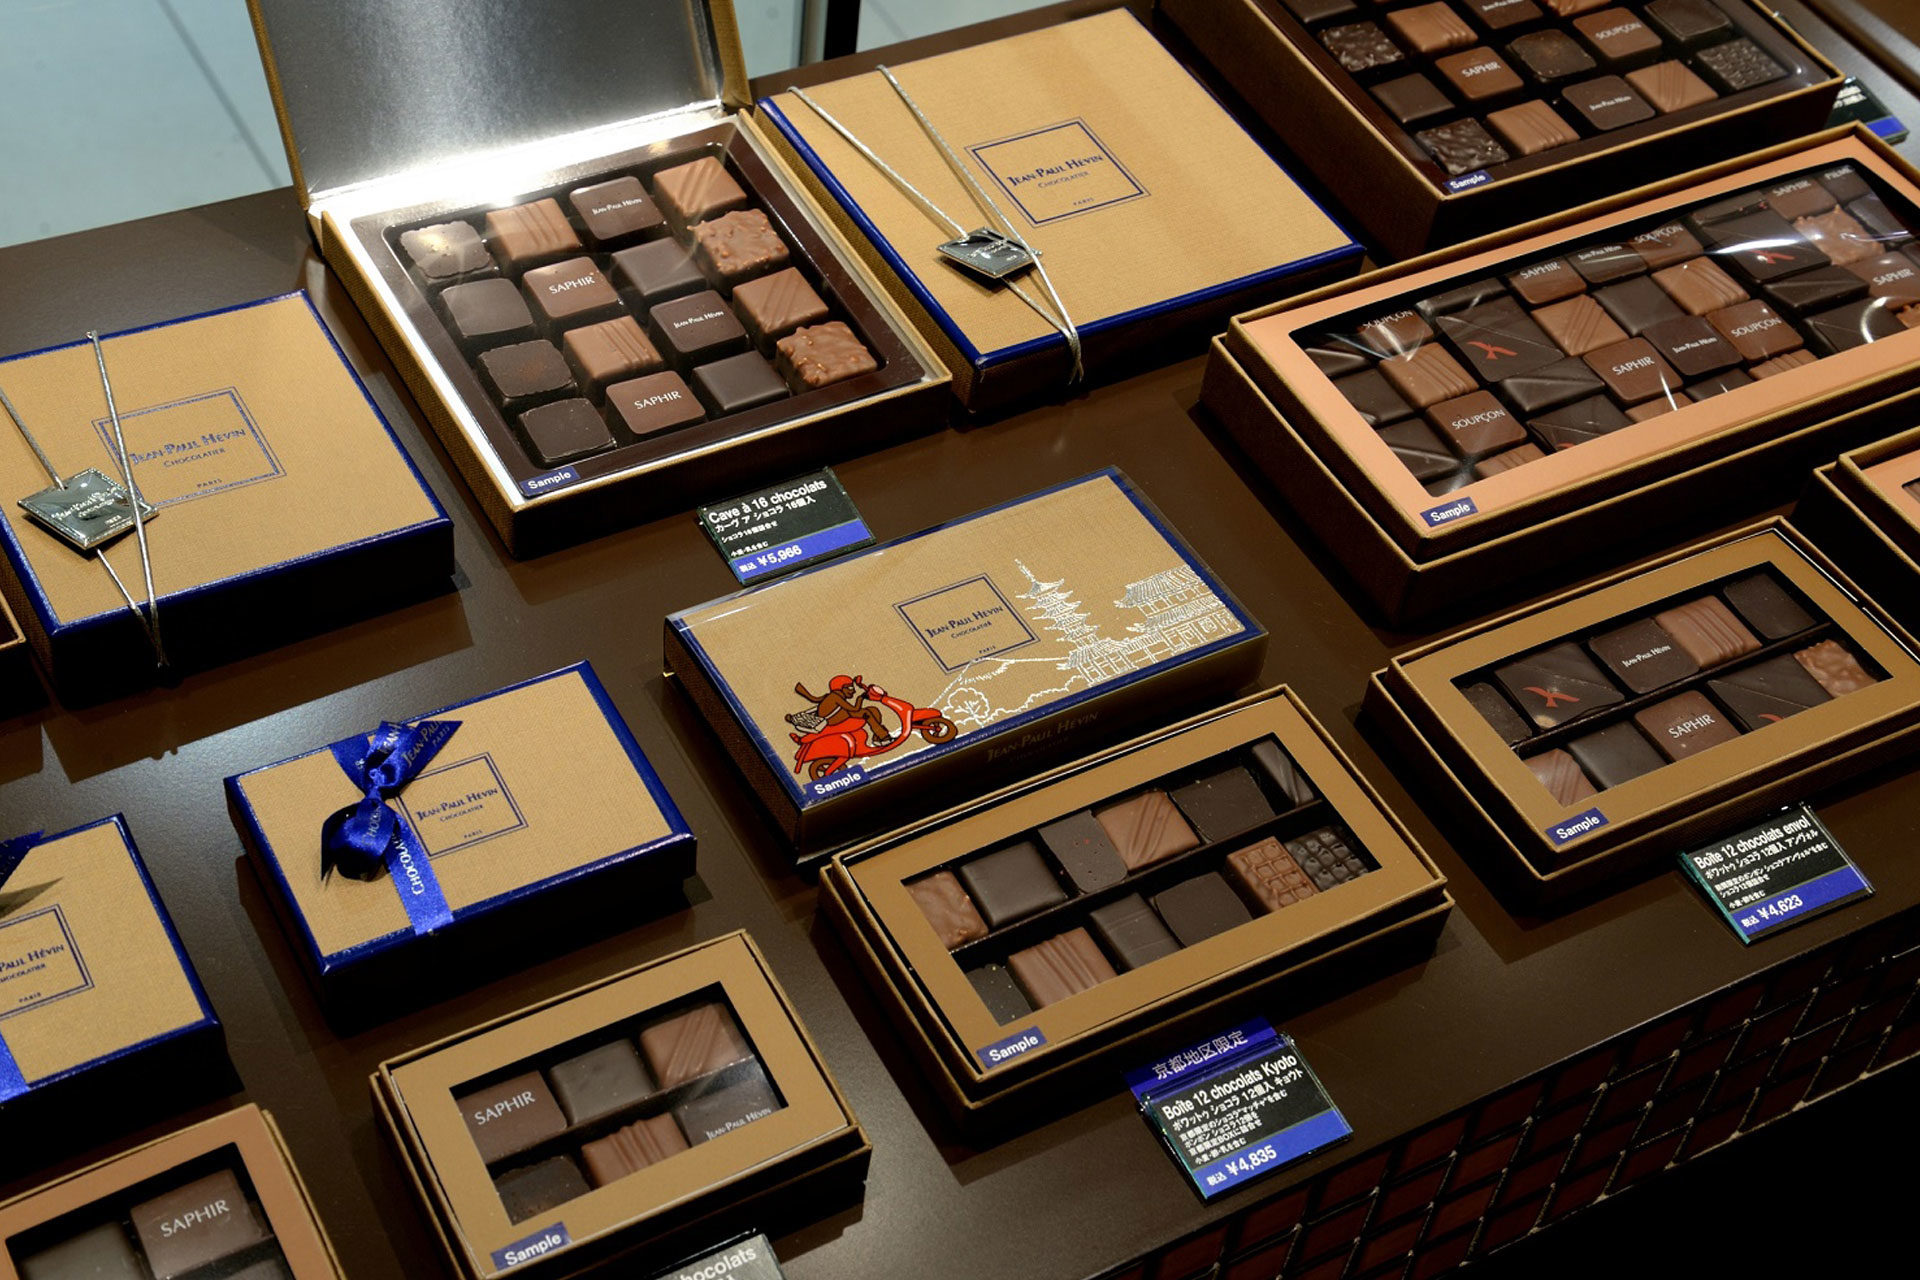 京都限定品法國產的朱古力和特高巧克力